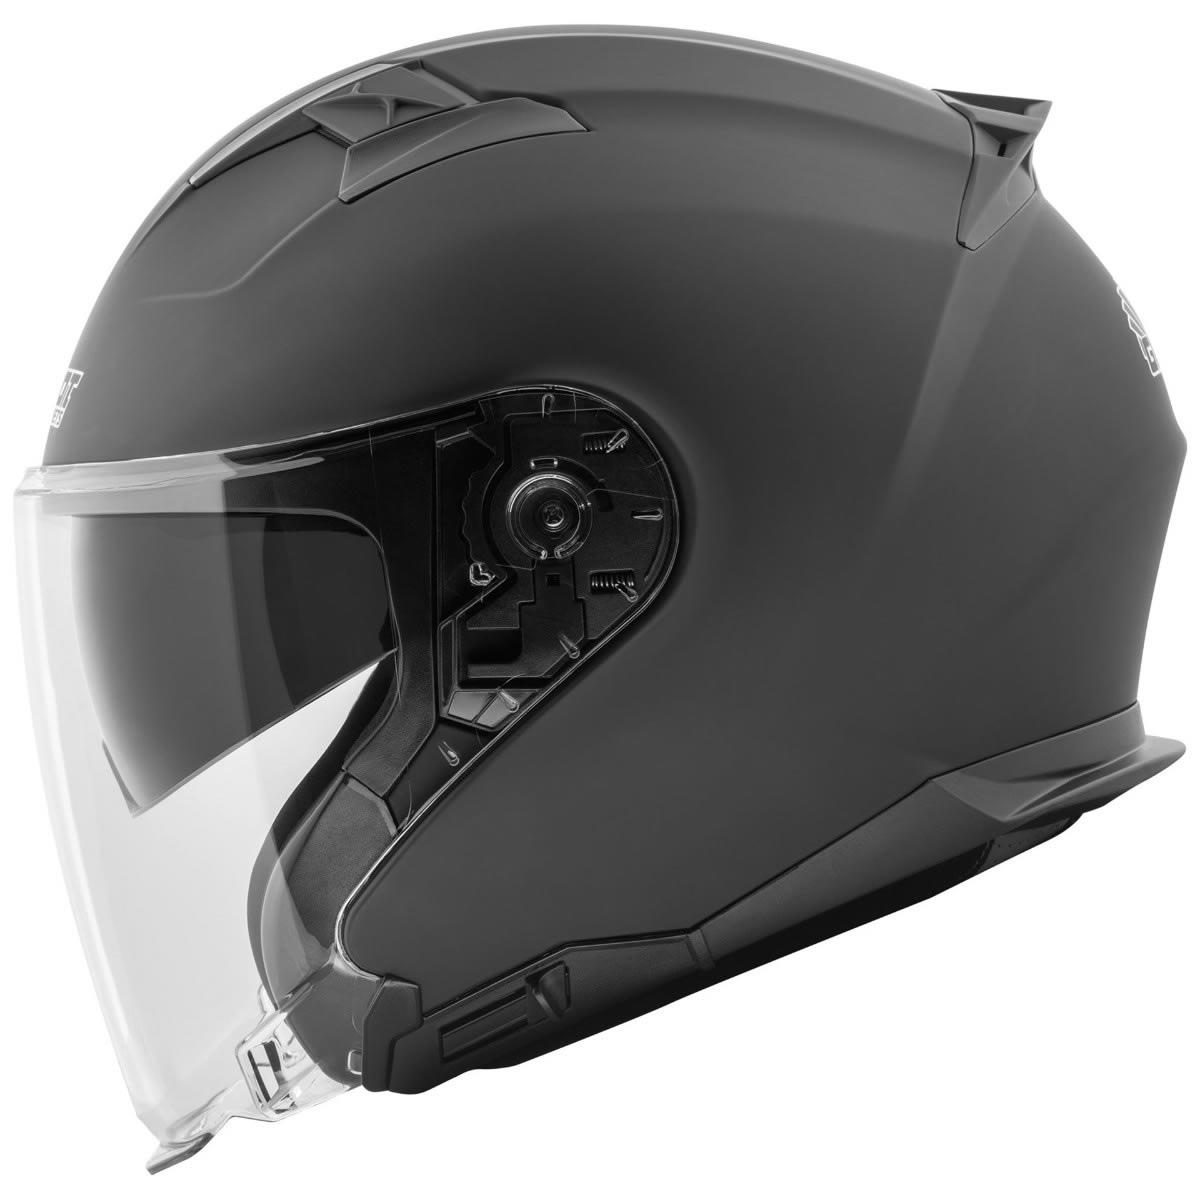 Germot GM 670 Helm, schwarz matt